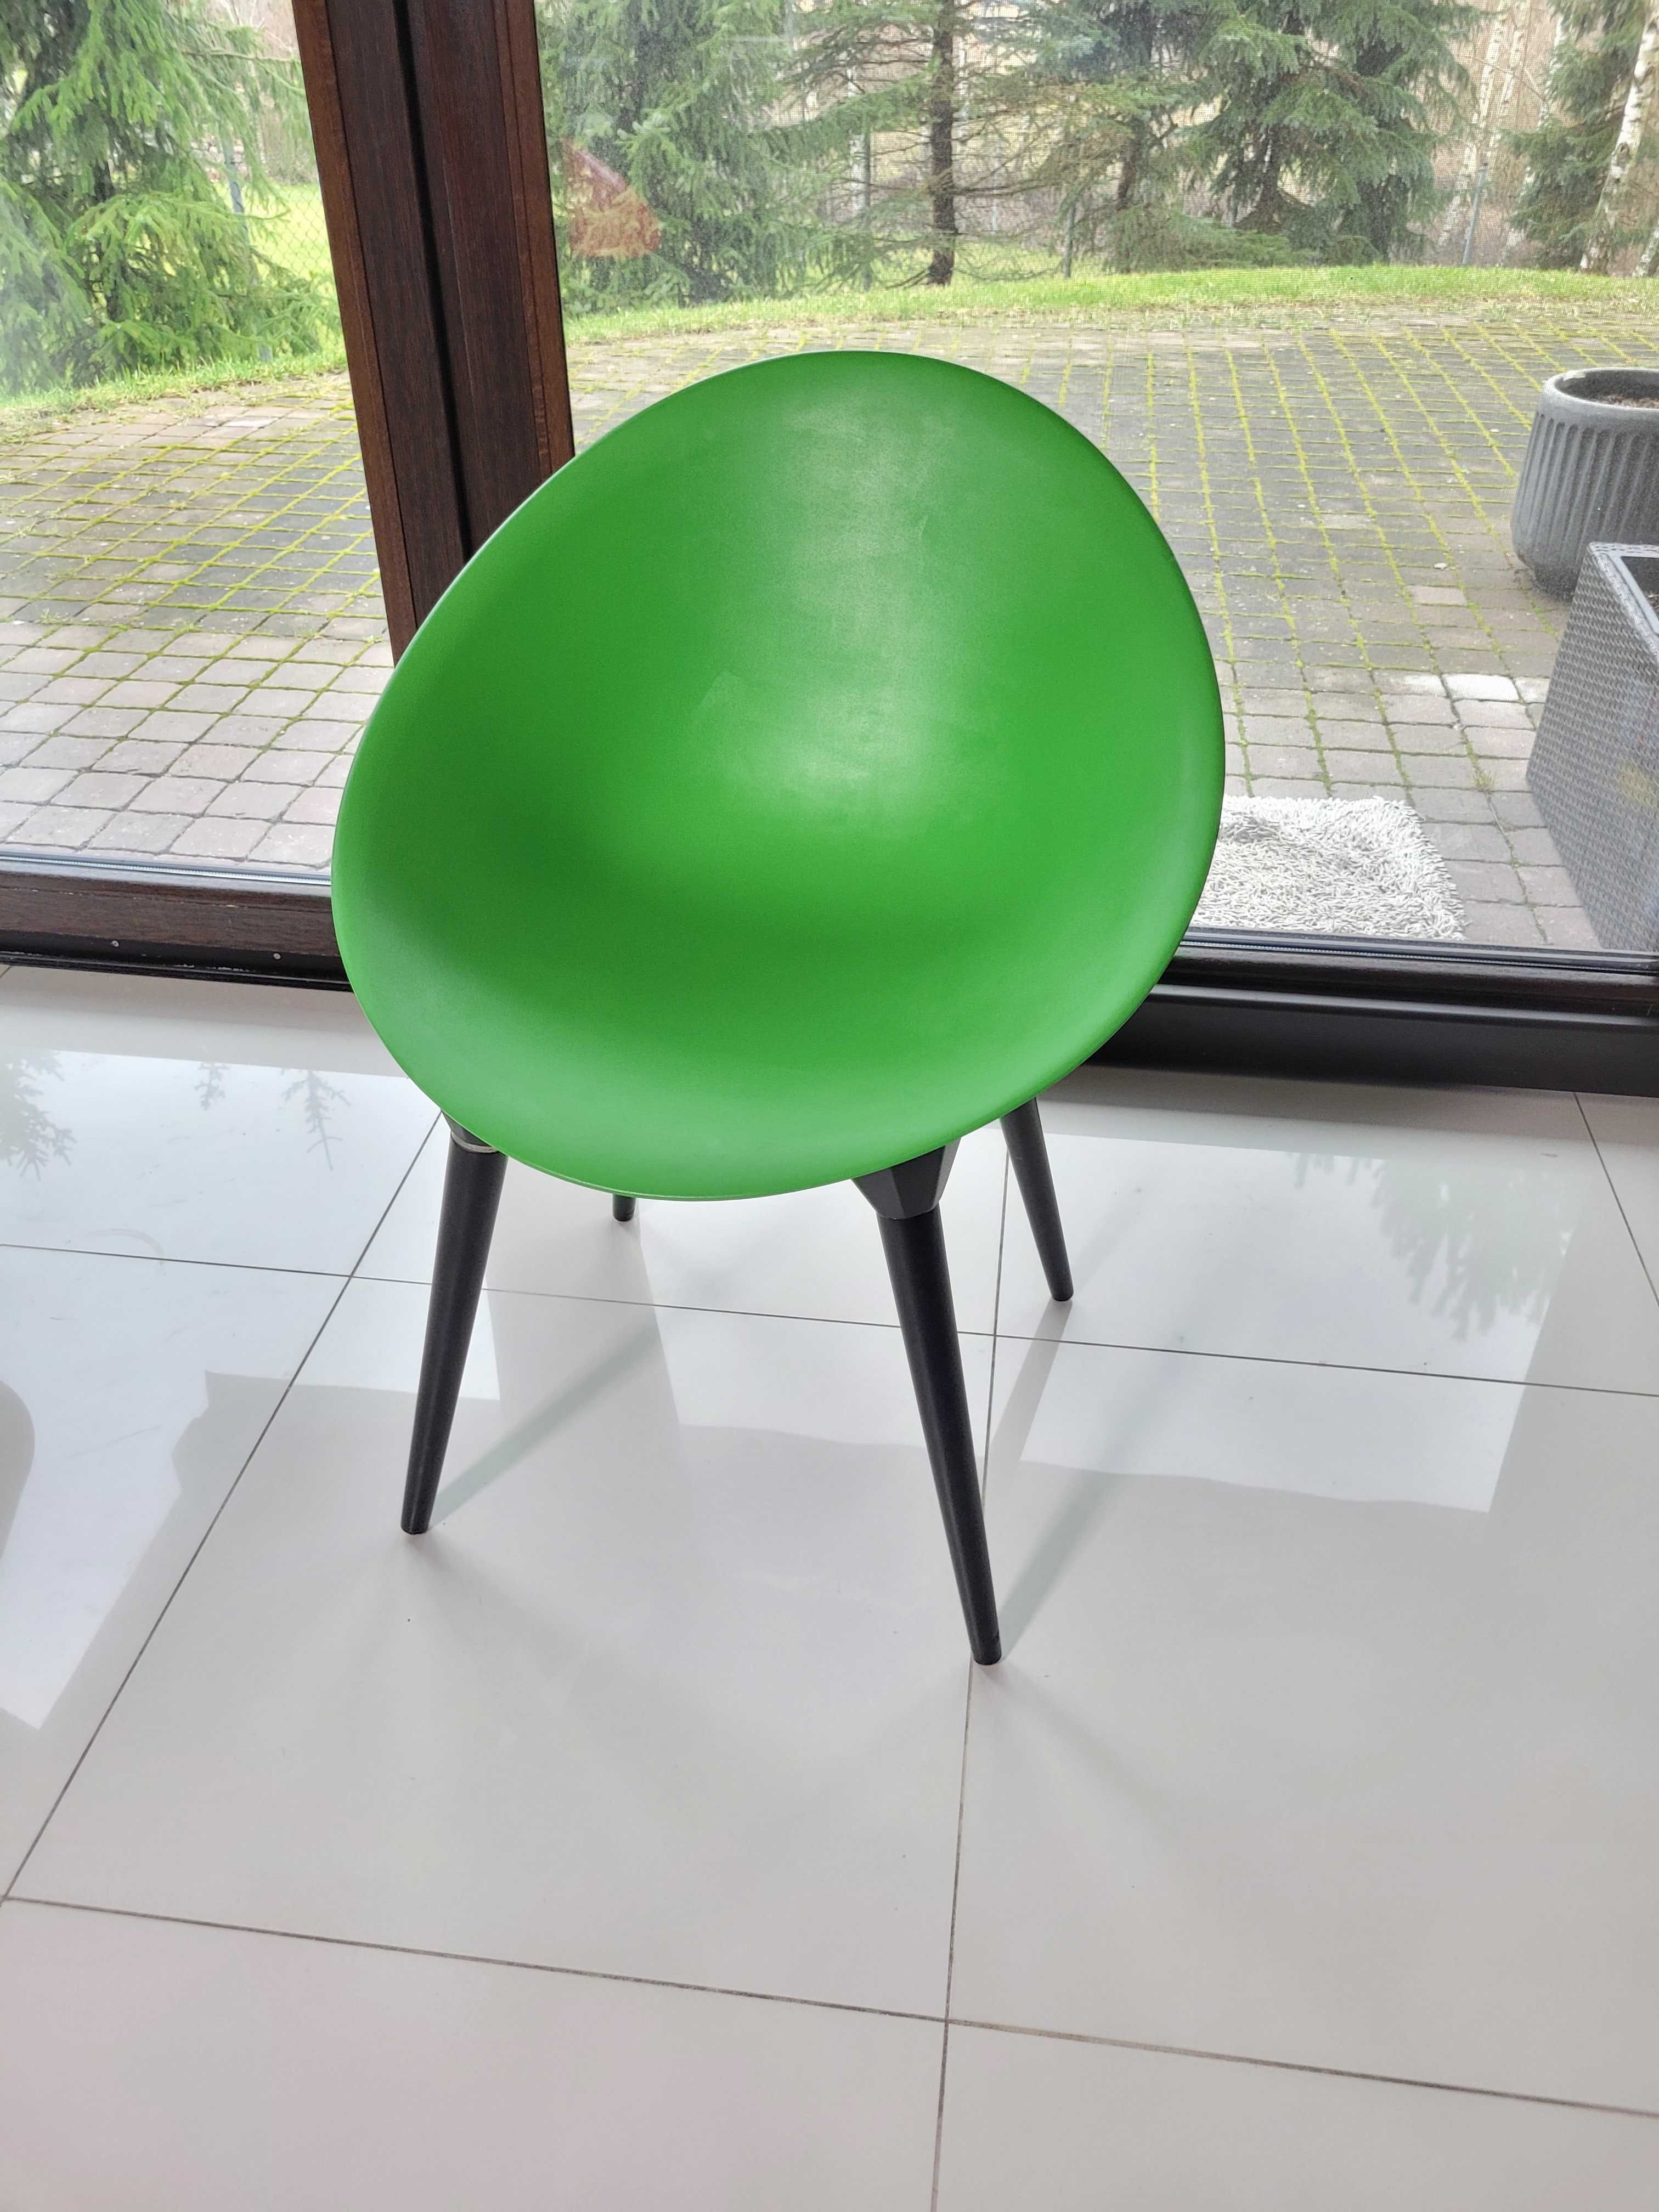 Krzesło Rock Chair, Włoszech Firma Moroso zielono czarne